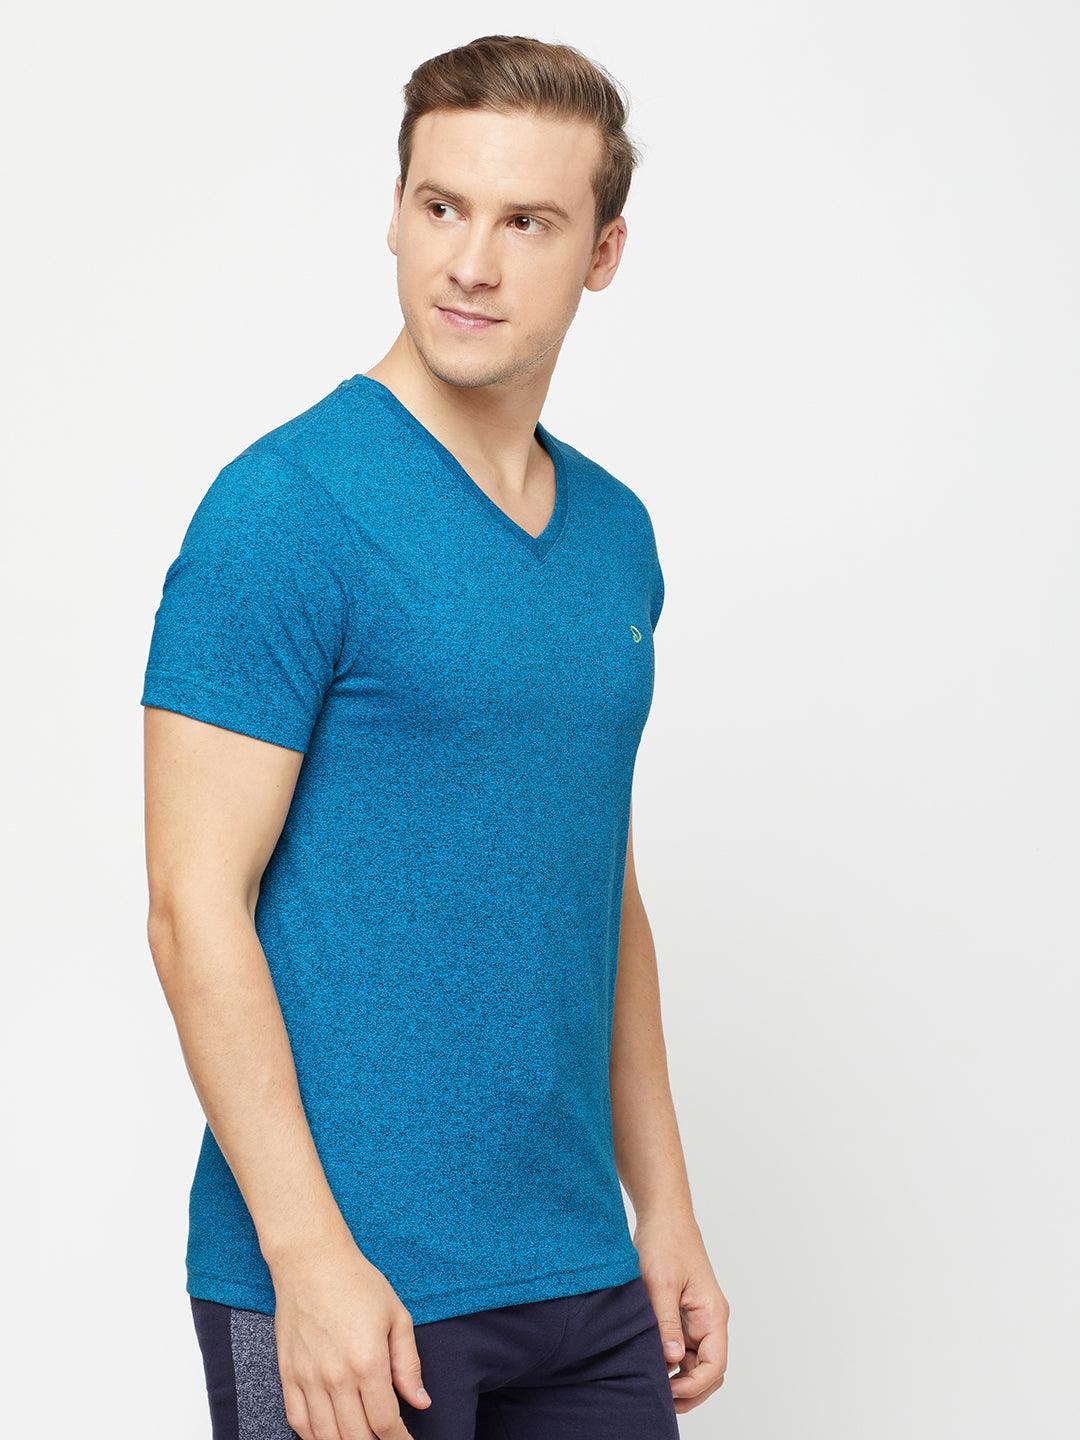 Sporto Men's V Neck T-Shirt - Sapphire Blue Jaspe